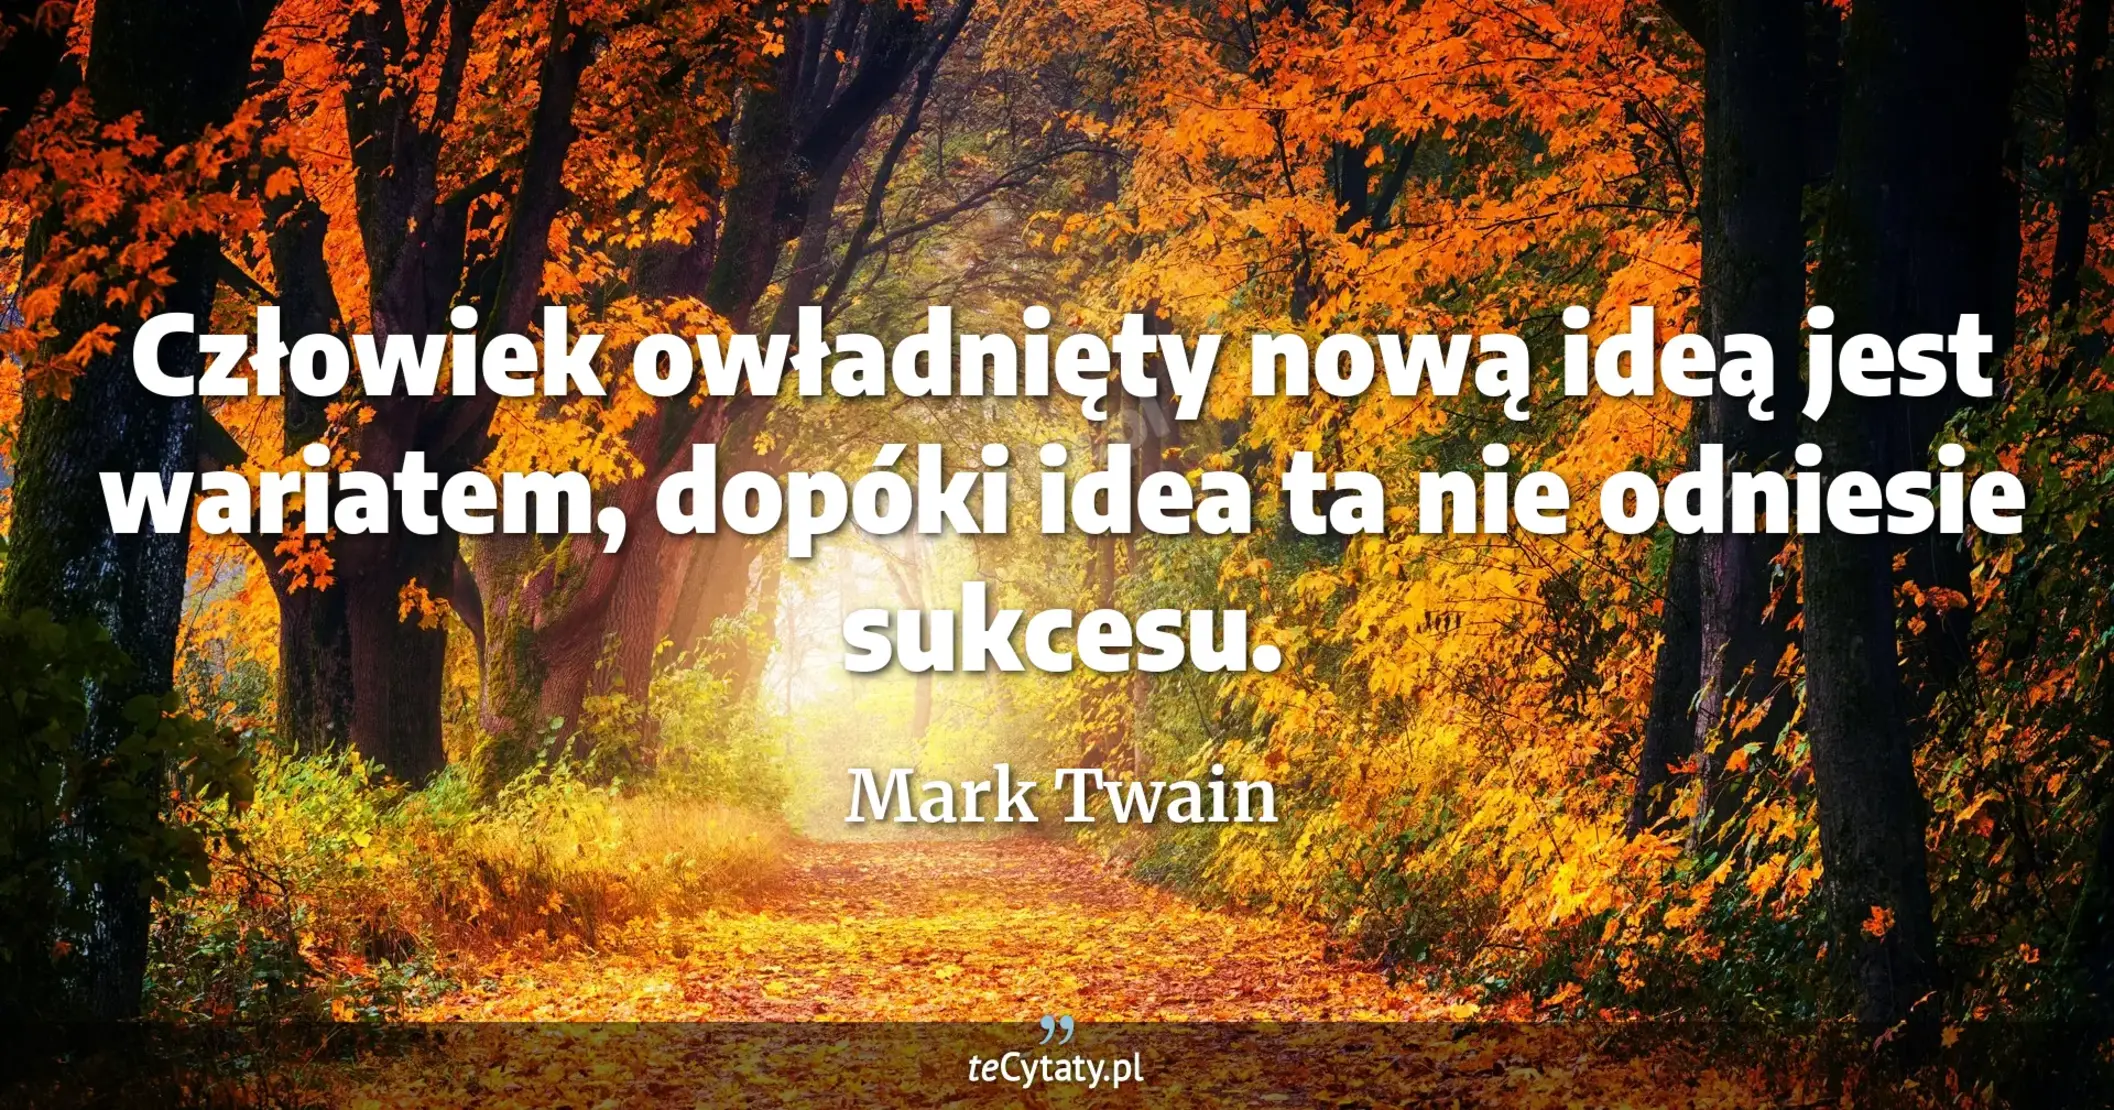 Człowiek owładnięty nową ideą jest wariatem, dopóki idea ta nie odniesie sukcesu. - Mark Twain